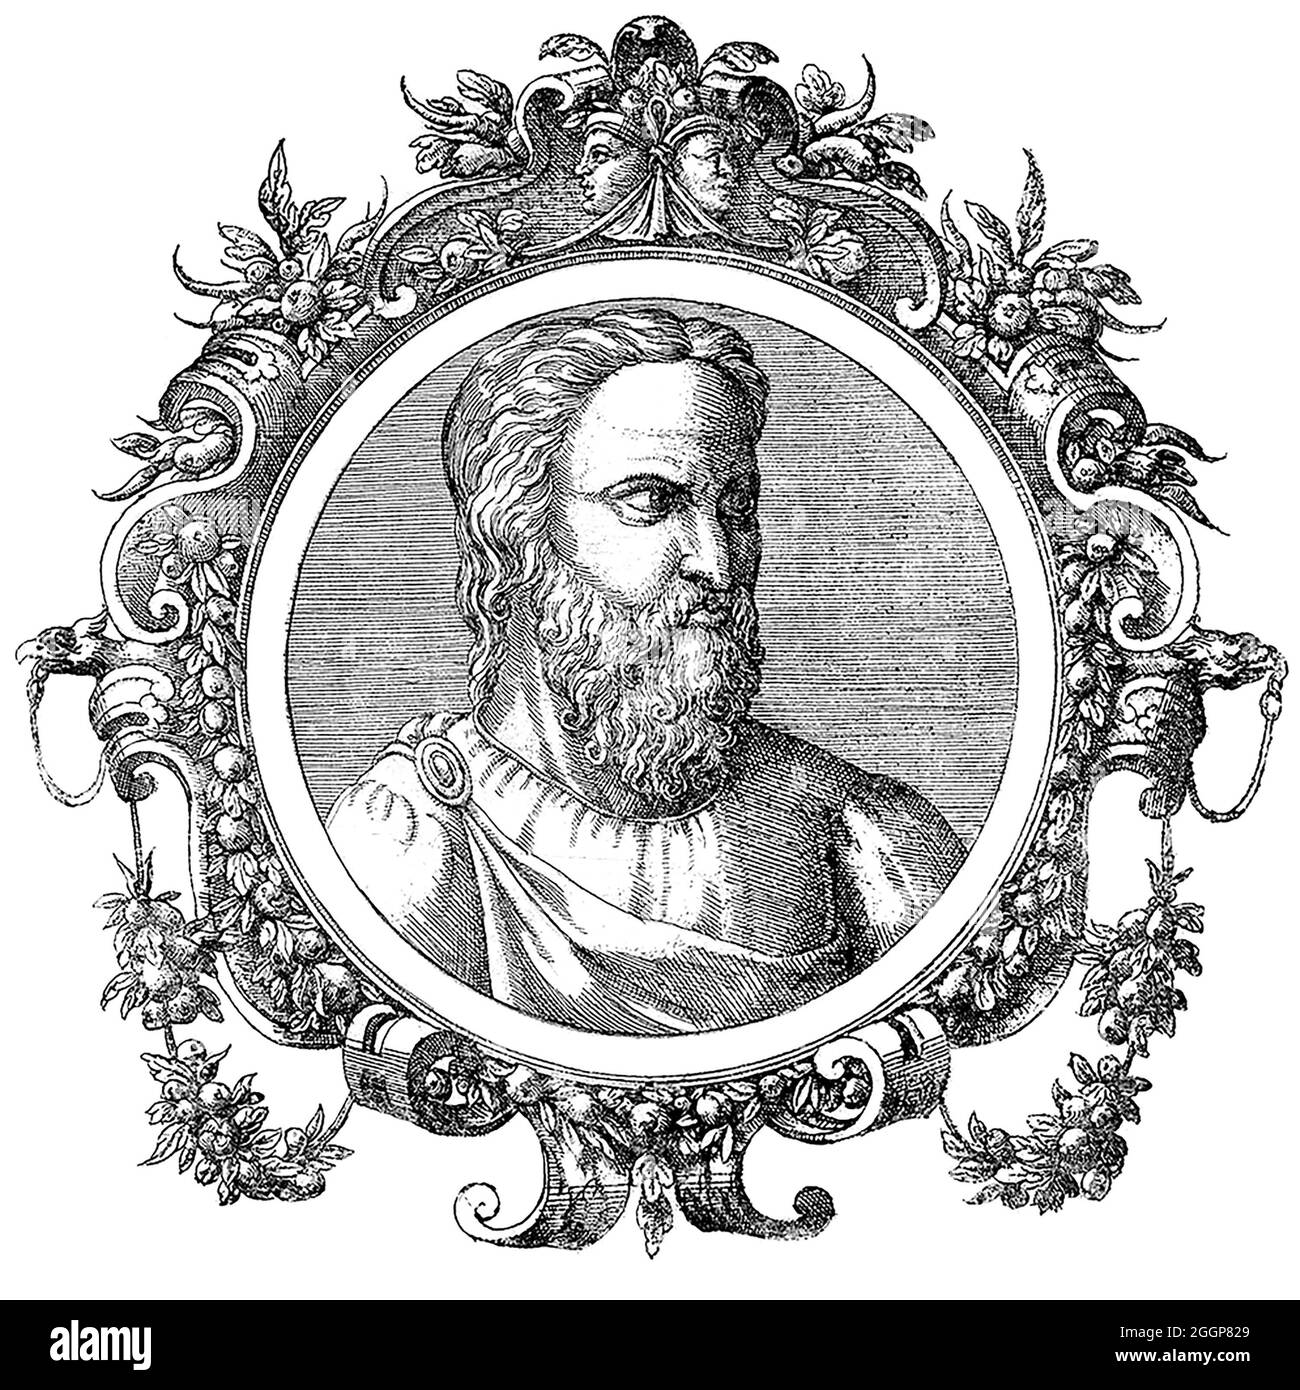 Aretaeus war ein gefeierter griechischer Arzt, der wahrscheinlich in der zweiten Hälfte des zweiten Jahrhunderts nach Christus in Kappadokien lebte, einem Teil des Römischen Reiches. Stockfoto